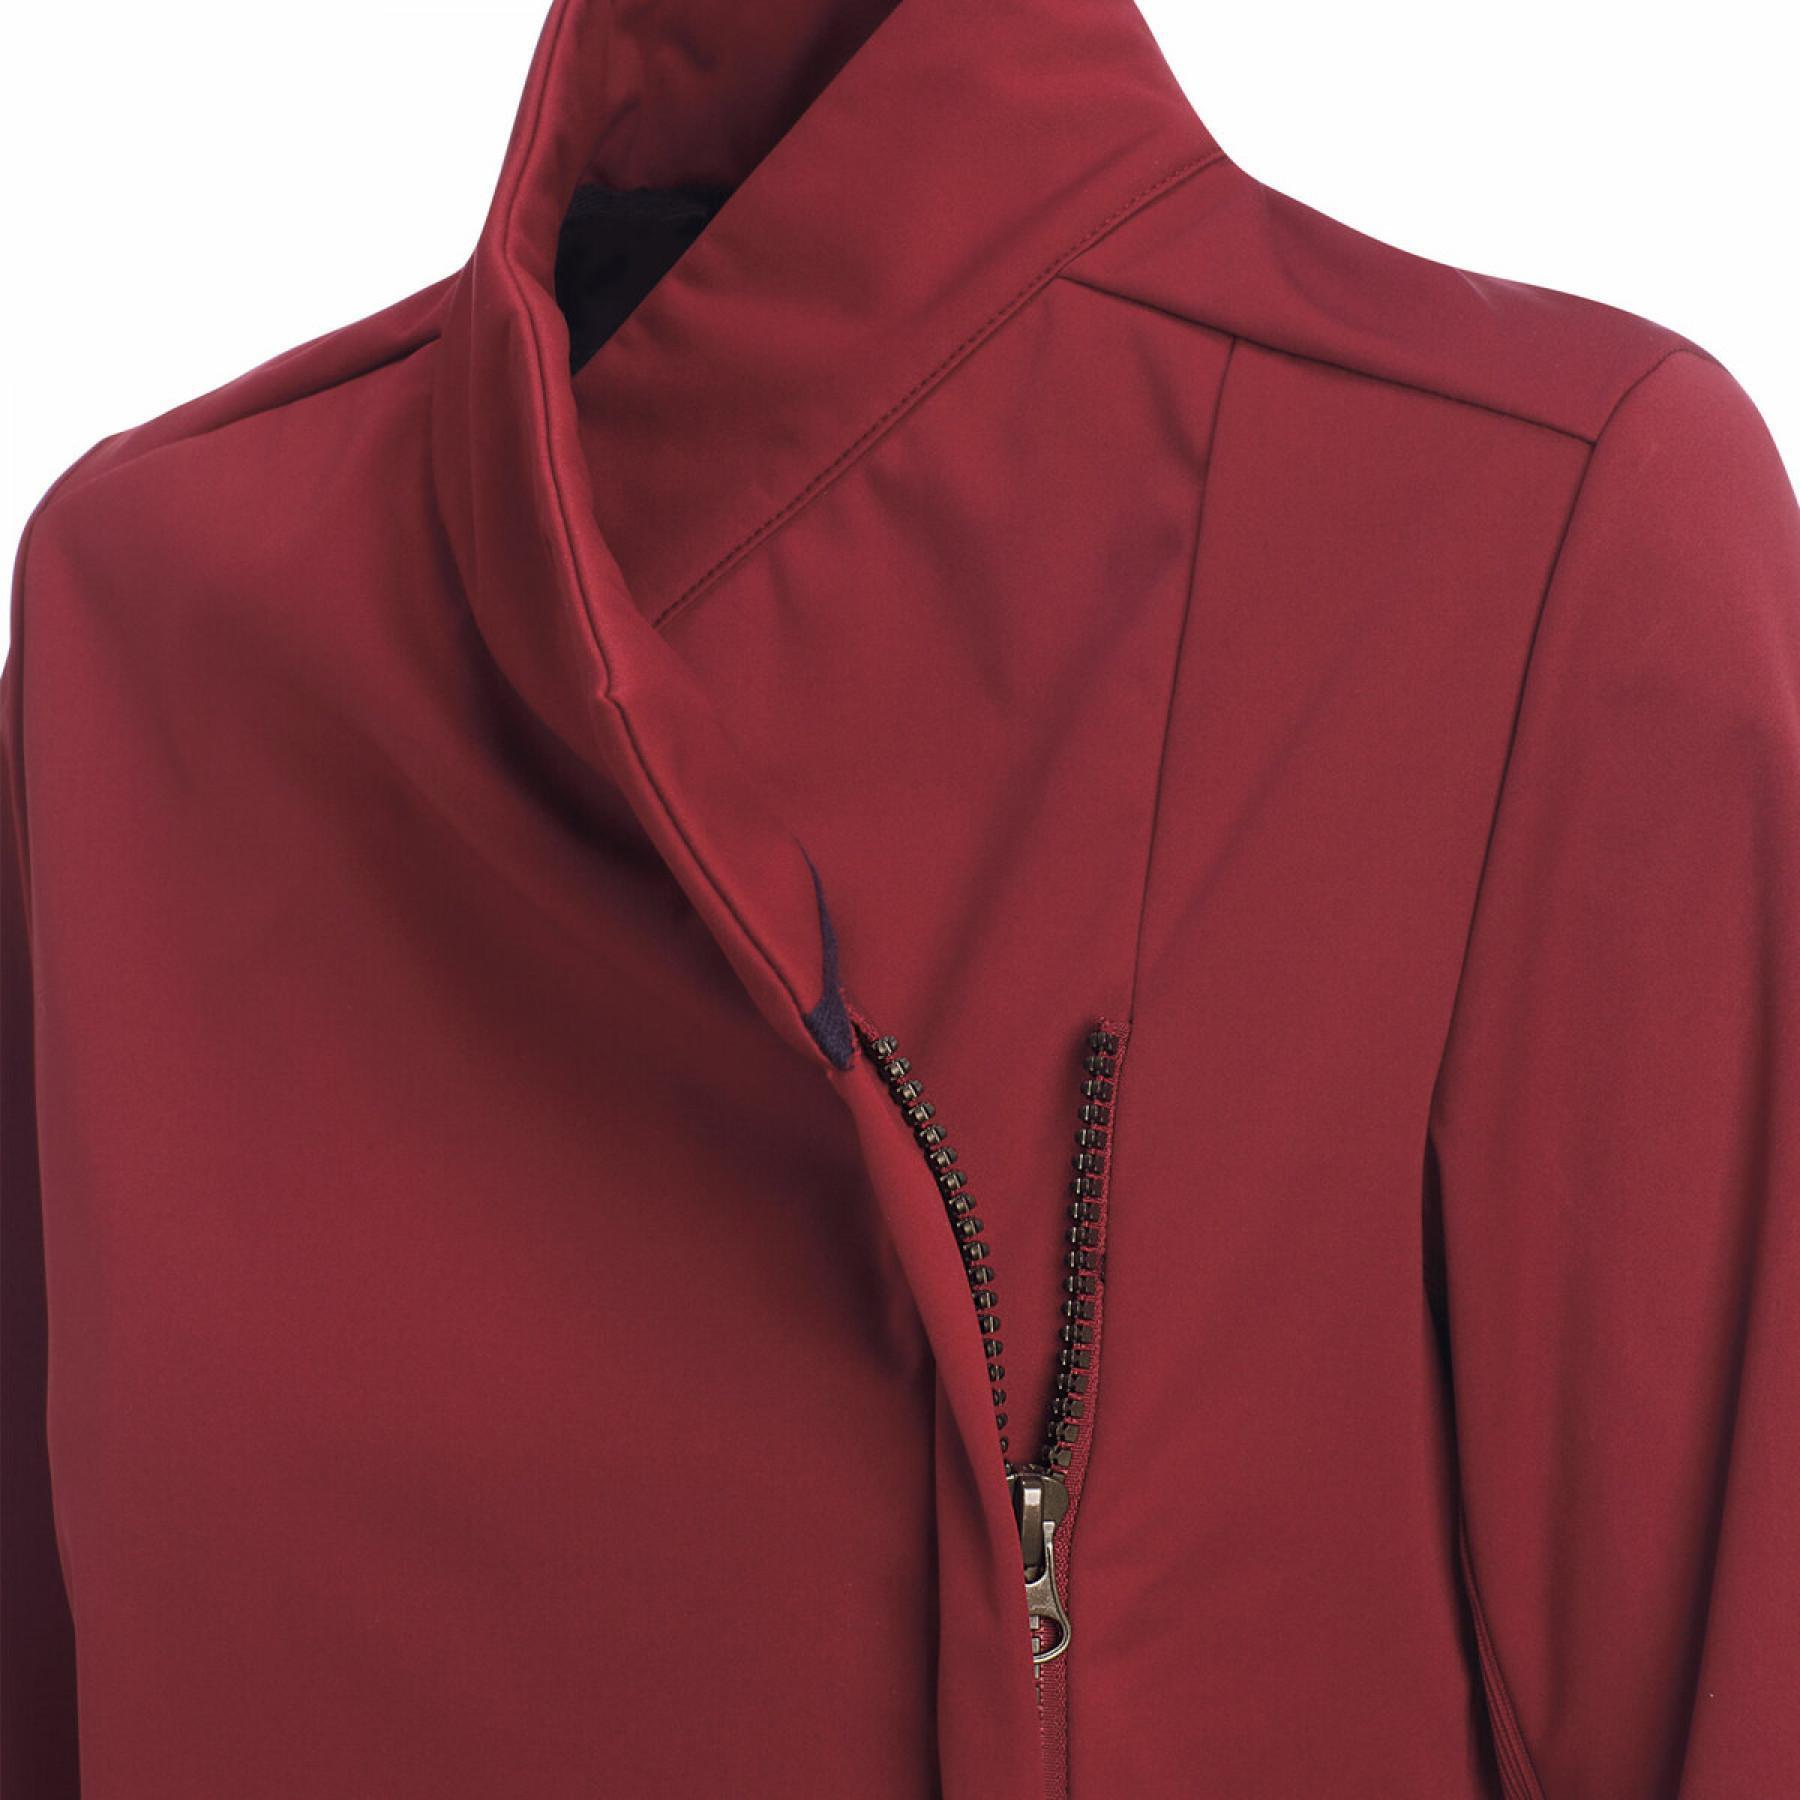 Women's jacket Errea hybrid rplc